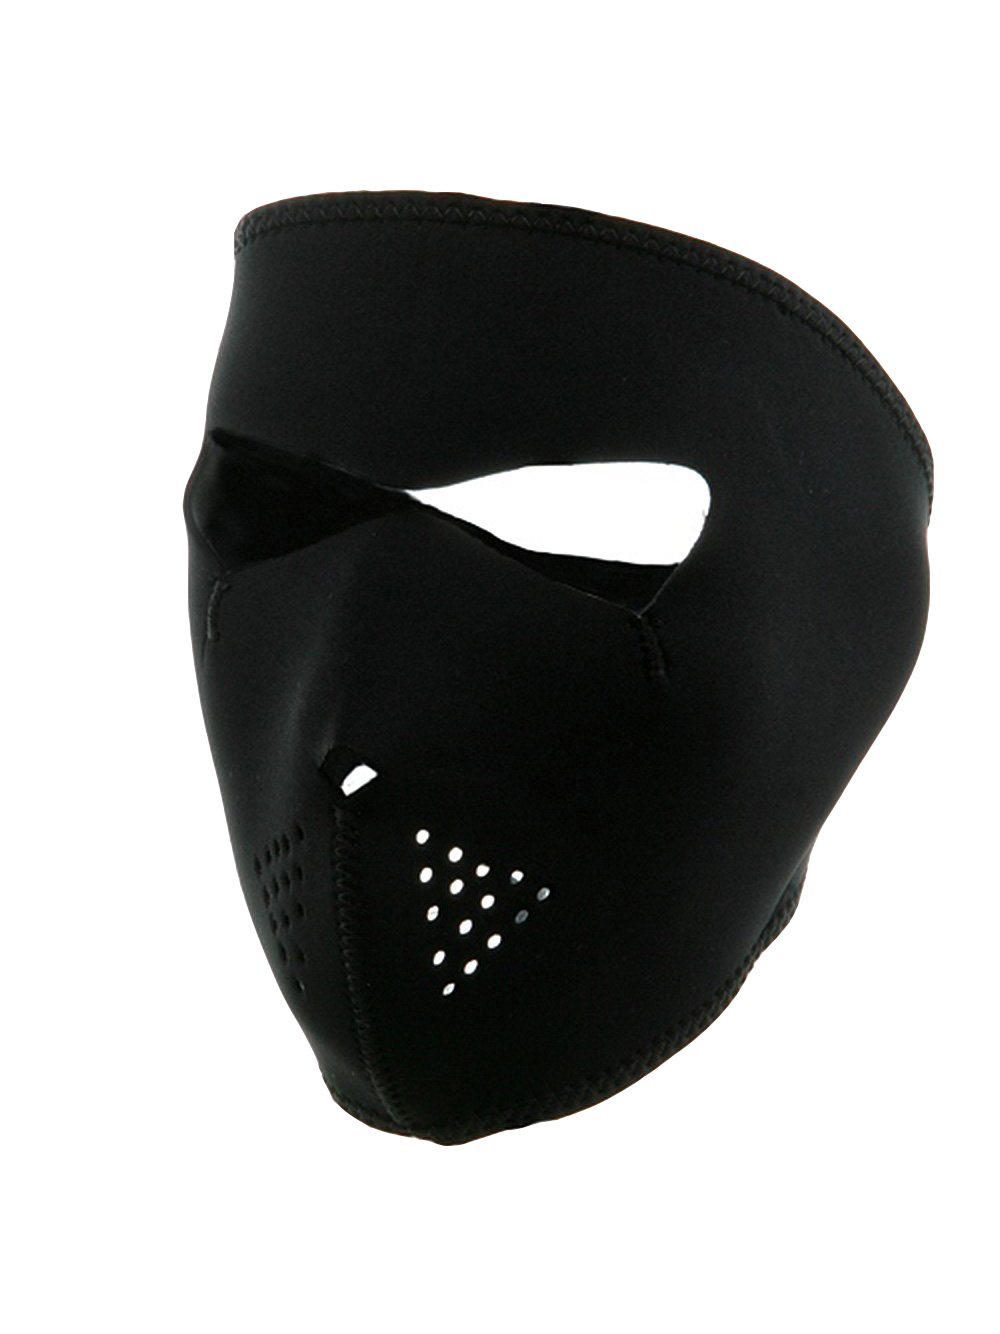 TopHeadwear Neoprene Full Face Mask ( 2 PACK ) - image 1 of 1